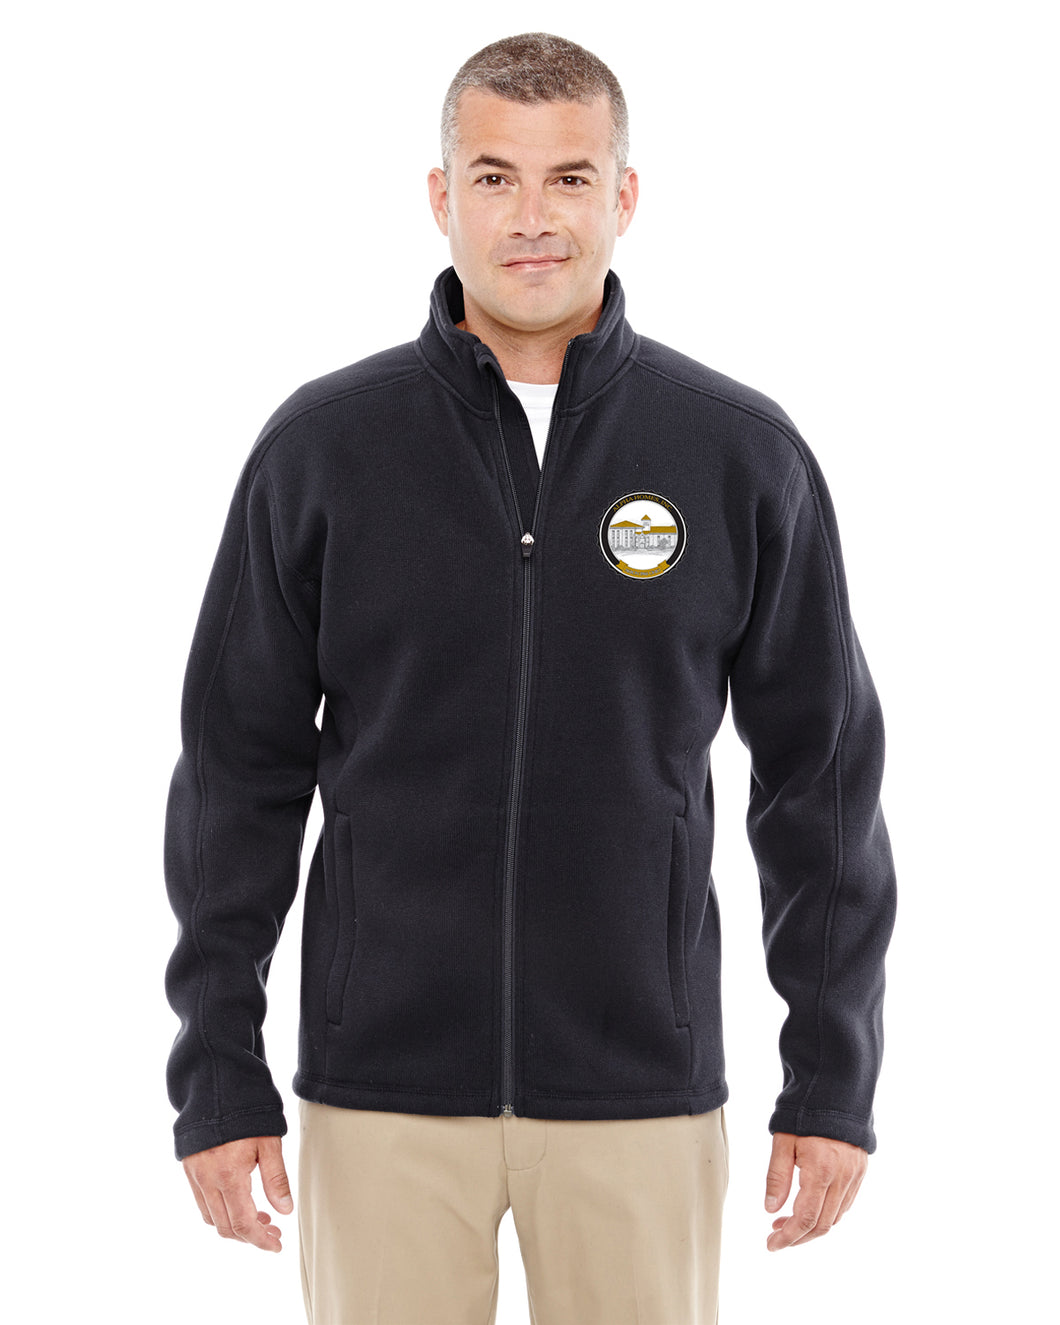 AHI - Men's Bristol Full-Zip Sweater Fleece Jacket